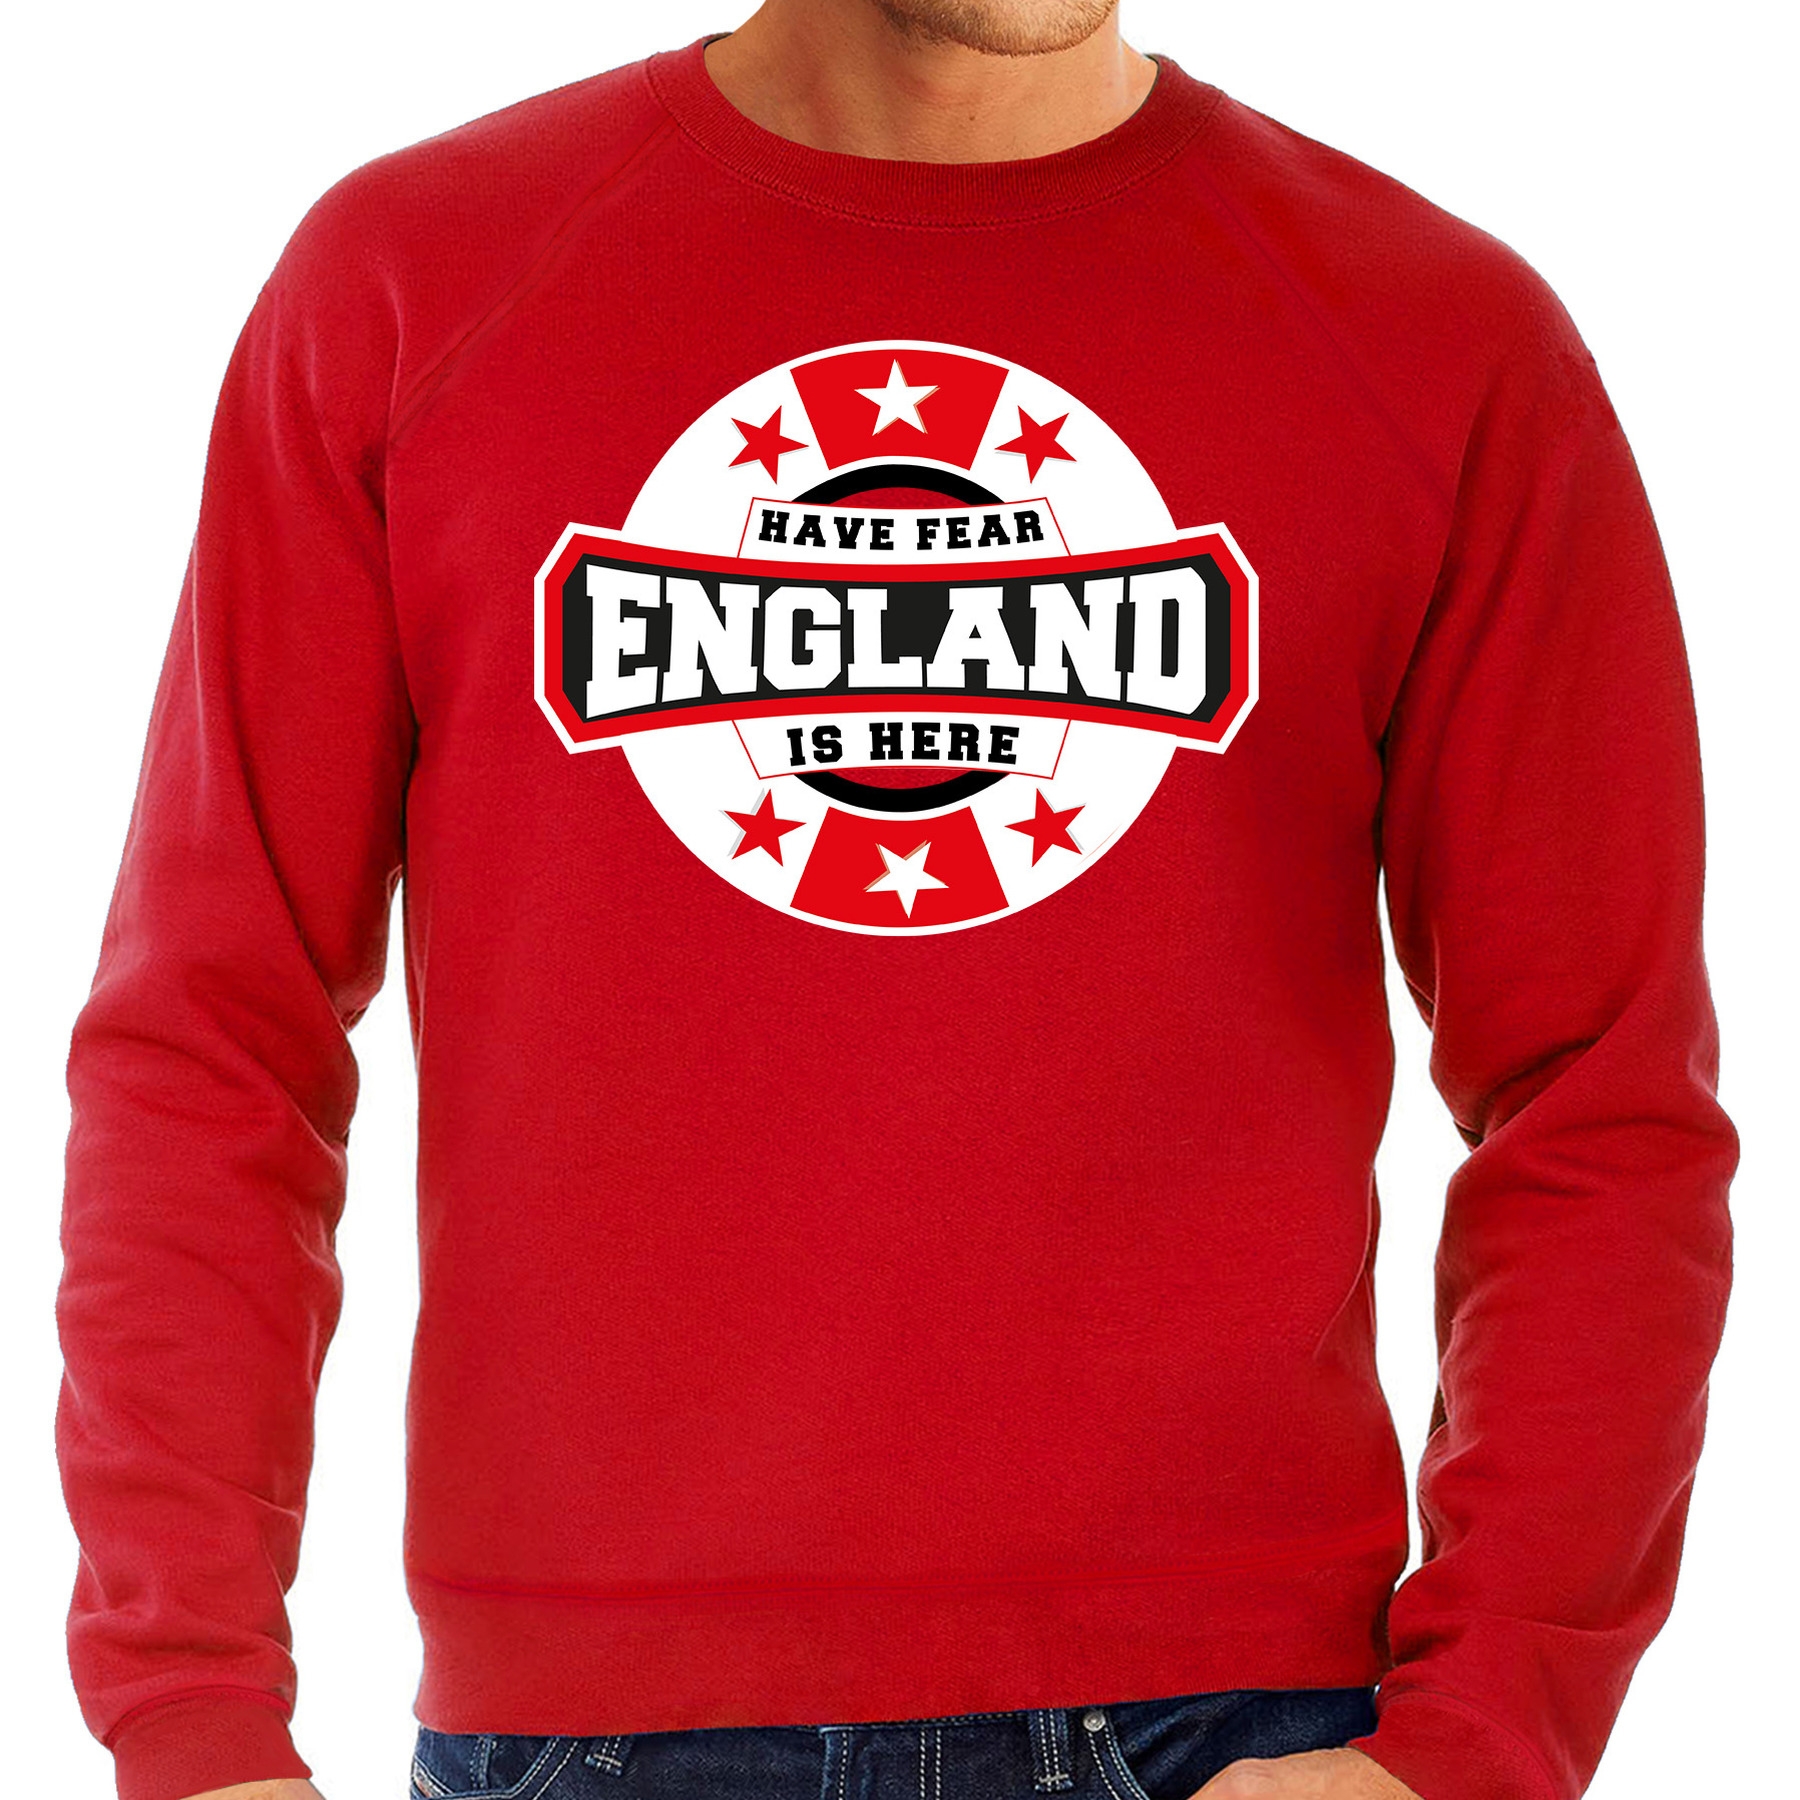 Have fear England-Engeland is here supporter trui-kleding met sterren embleem rood voor heren